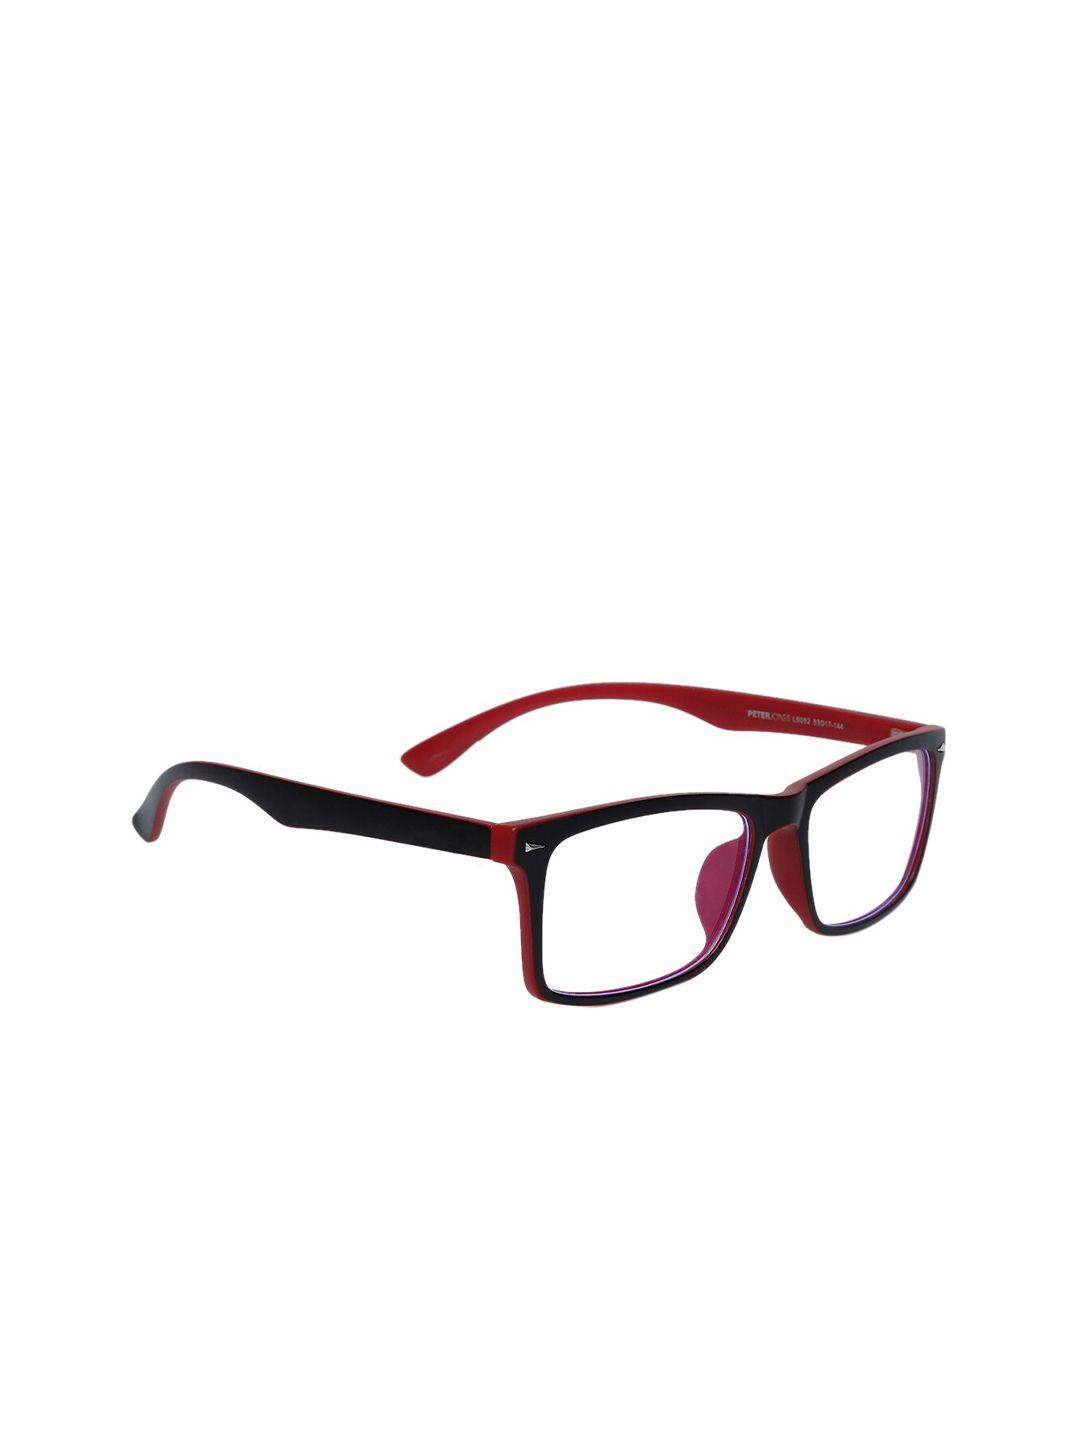 peter jones eyewear unisex black & red full rim rectangle blue light blocking glasses